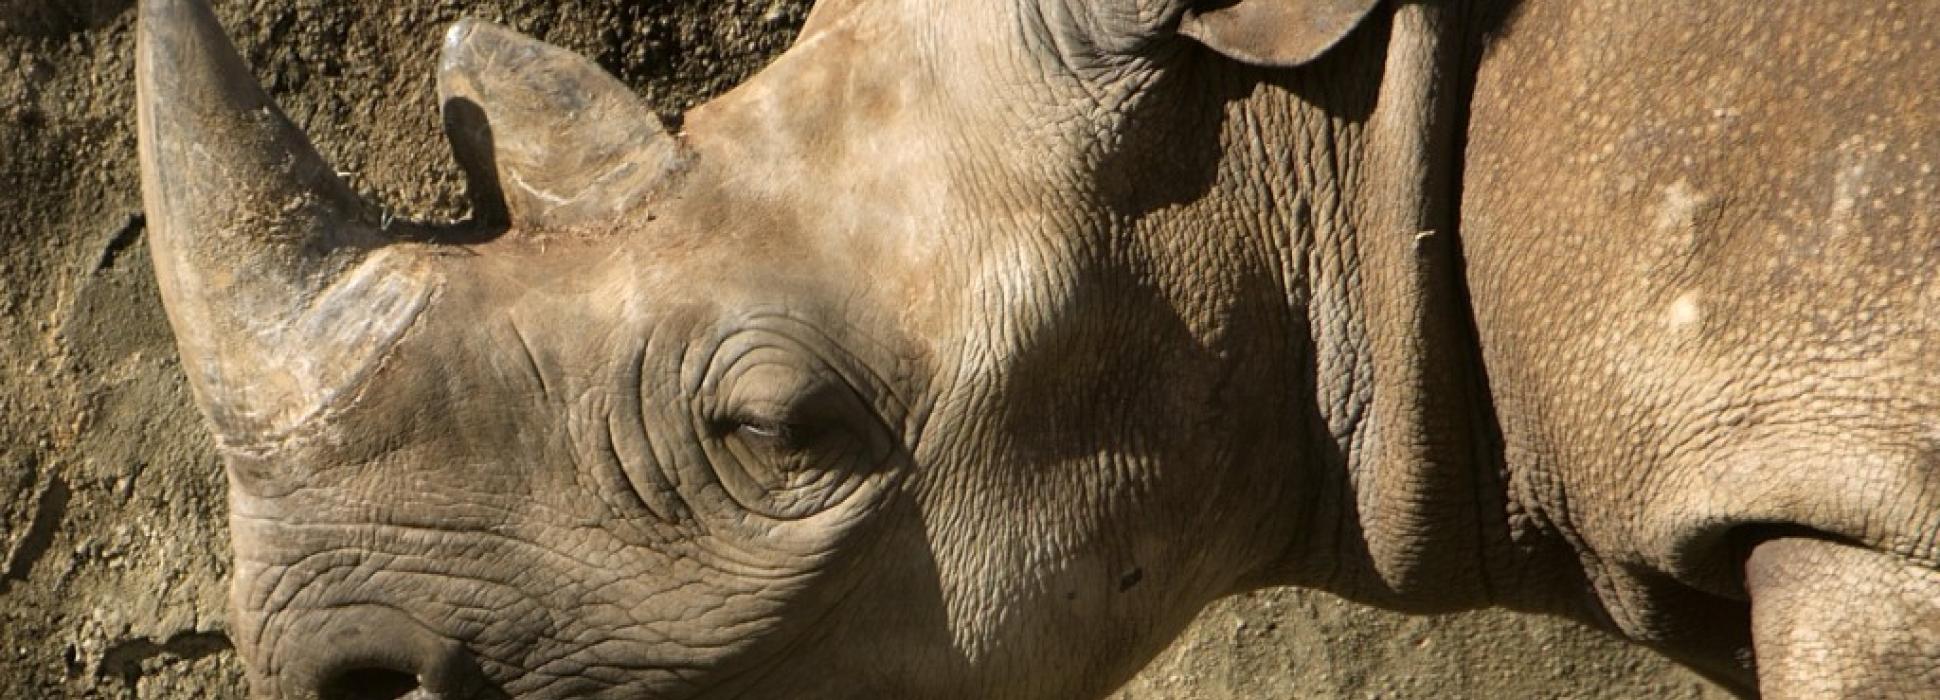 La ONG Redil, compradora del zoológico de Pont-Scorff, publica la autopsia del rinoceronte negro Jacob fallecido el 31 de diciembre de 2019